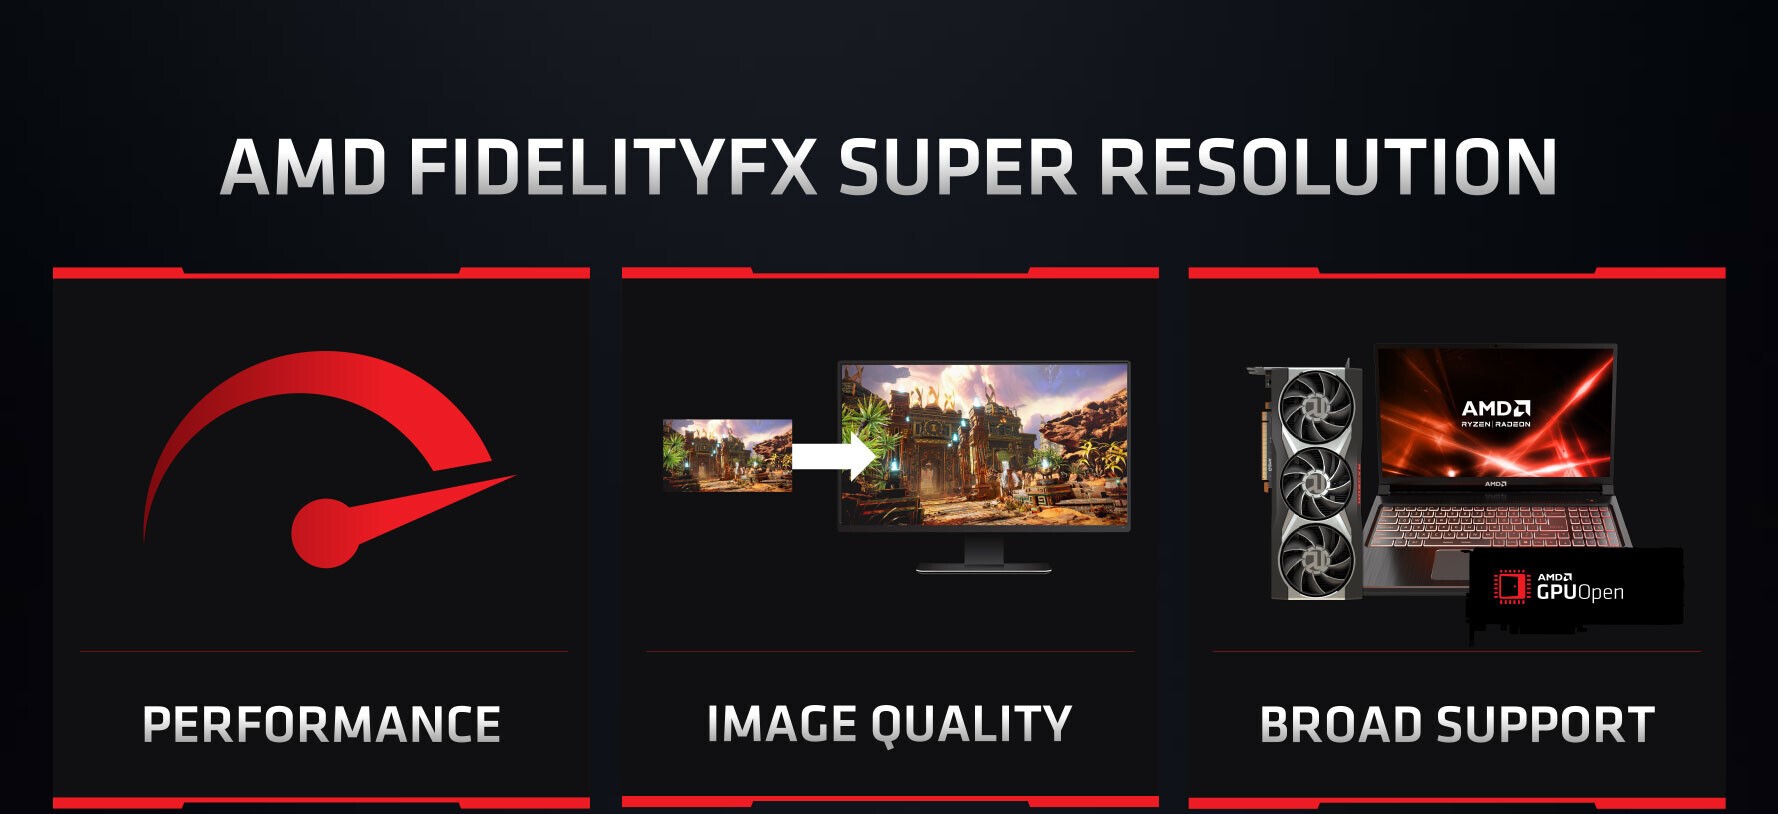 AMD finalmente hizo un gran anuncio sobre su ambiciosa tecnología FidelityFX Super Resolution (FSR), el rival de DLSS de Nvidia